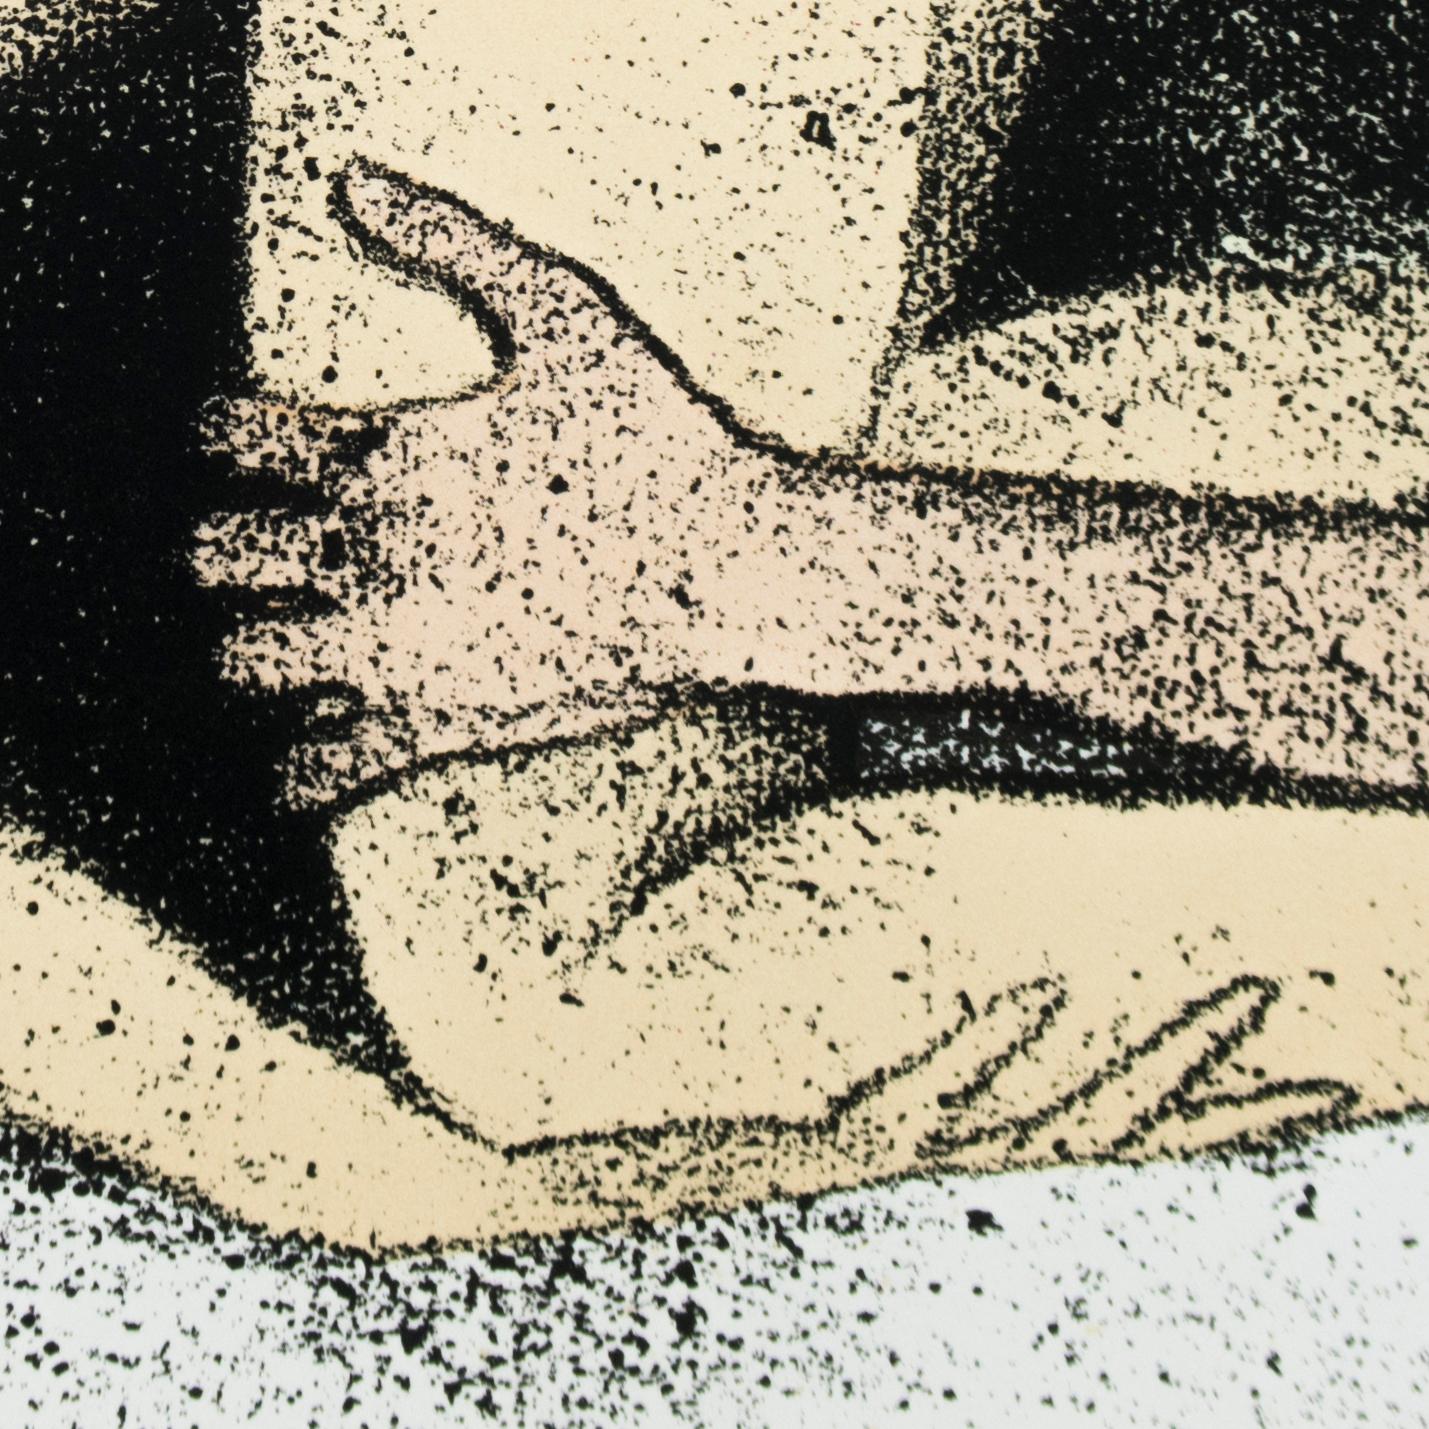 Certains ne le font pas (A) I. B. Kitaj dessin érotique d'une blonde nue avec un homme sur un lit - Réalisme Print par Ronald Brooks Kitaj